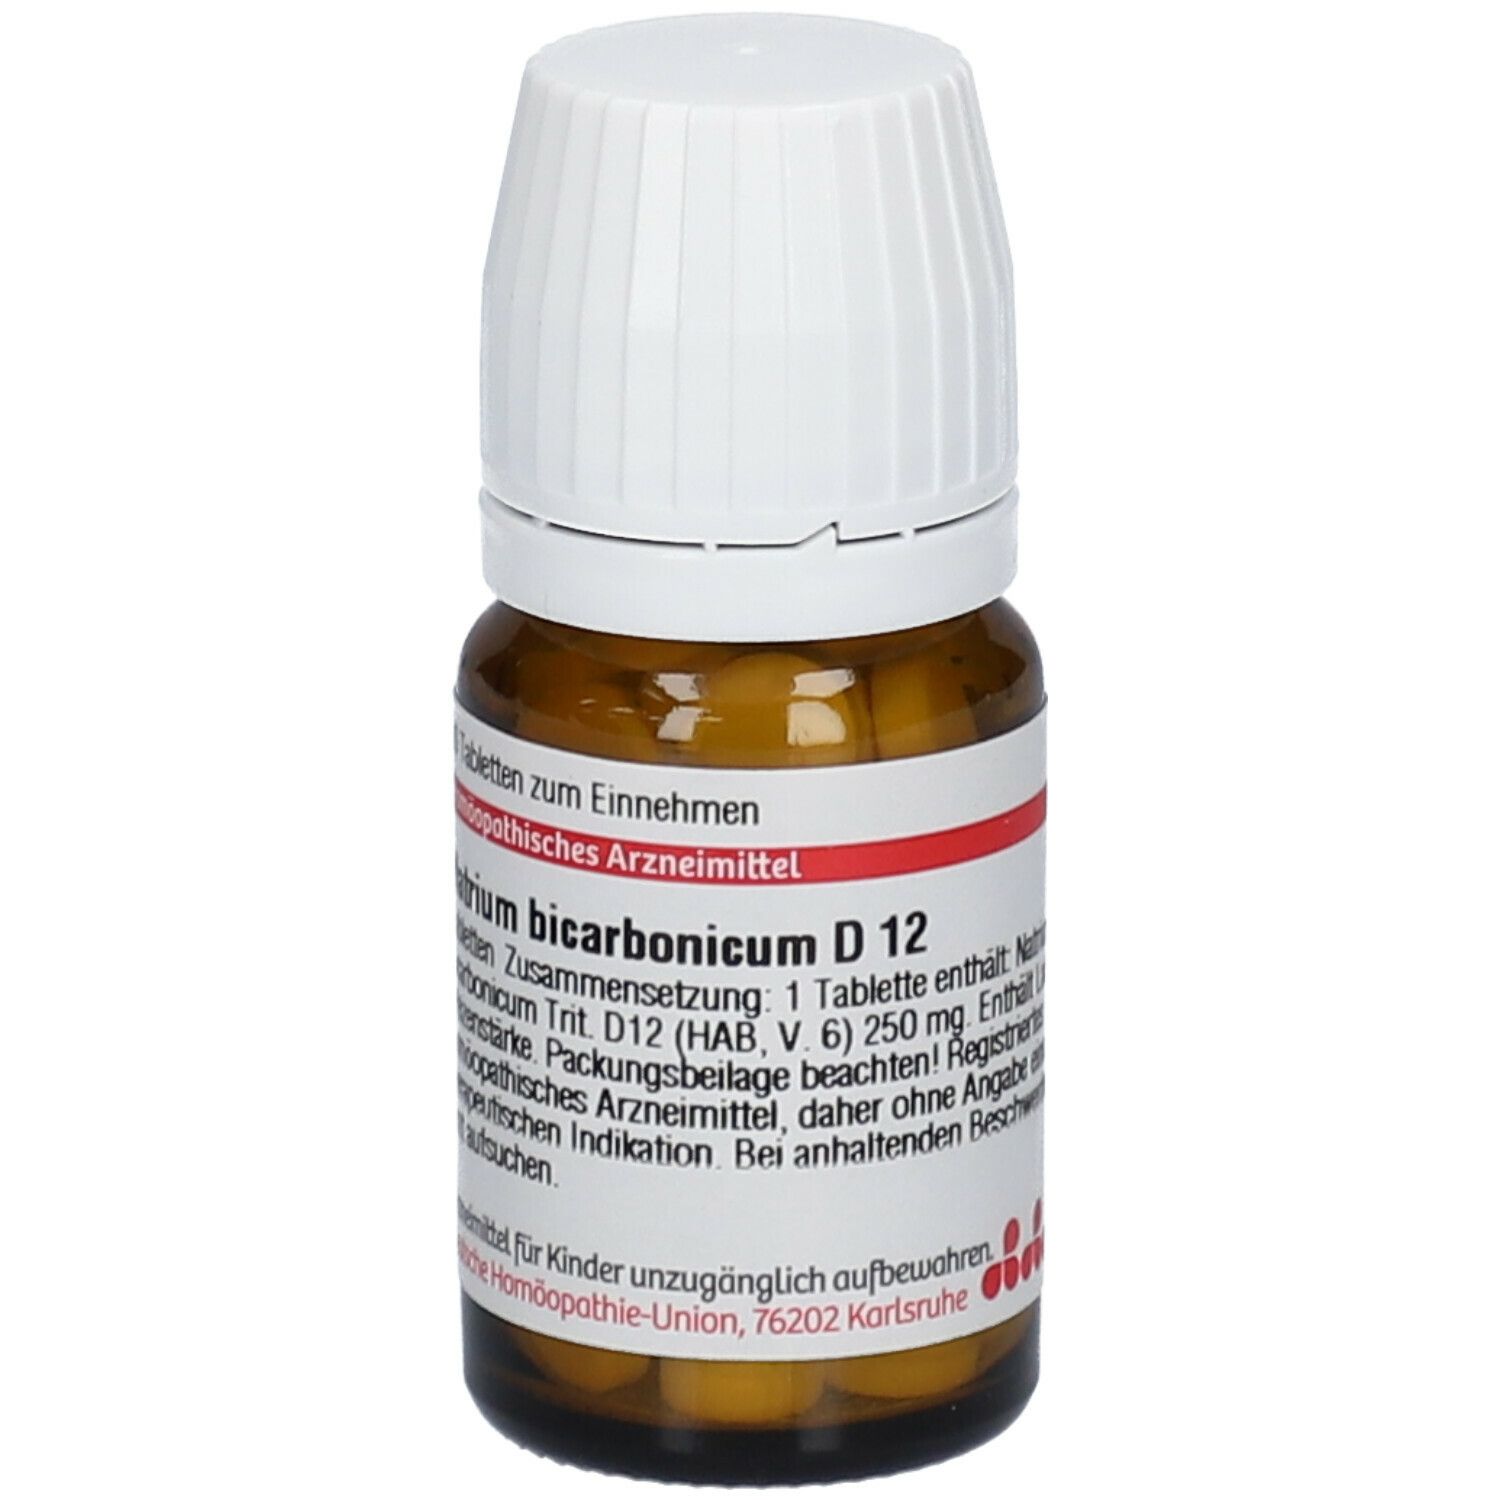 DHU Natrium Bicarbonicum D12